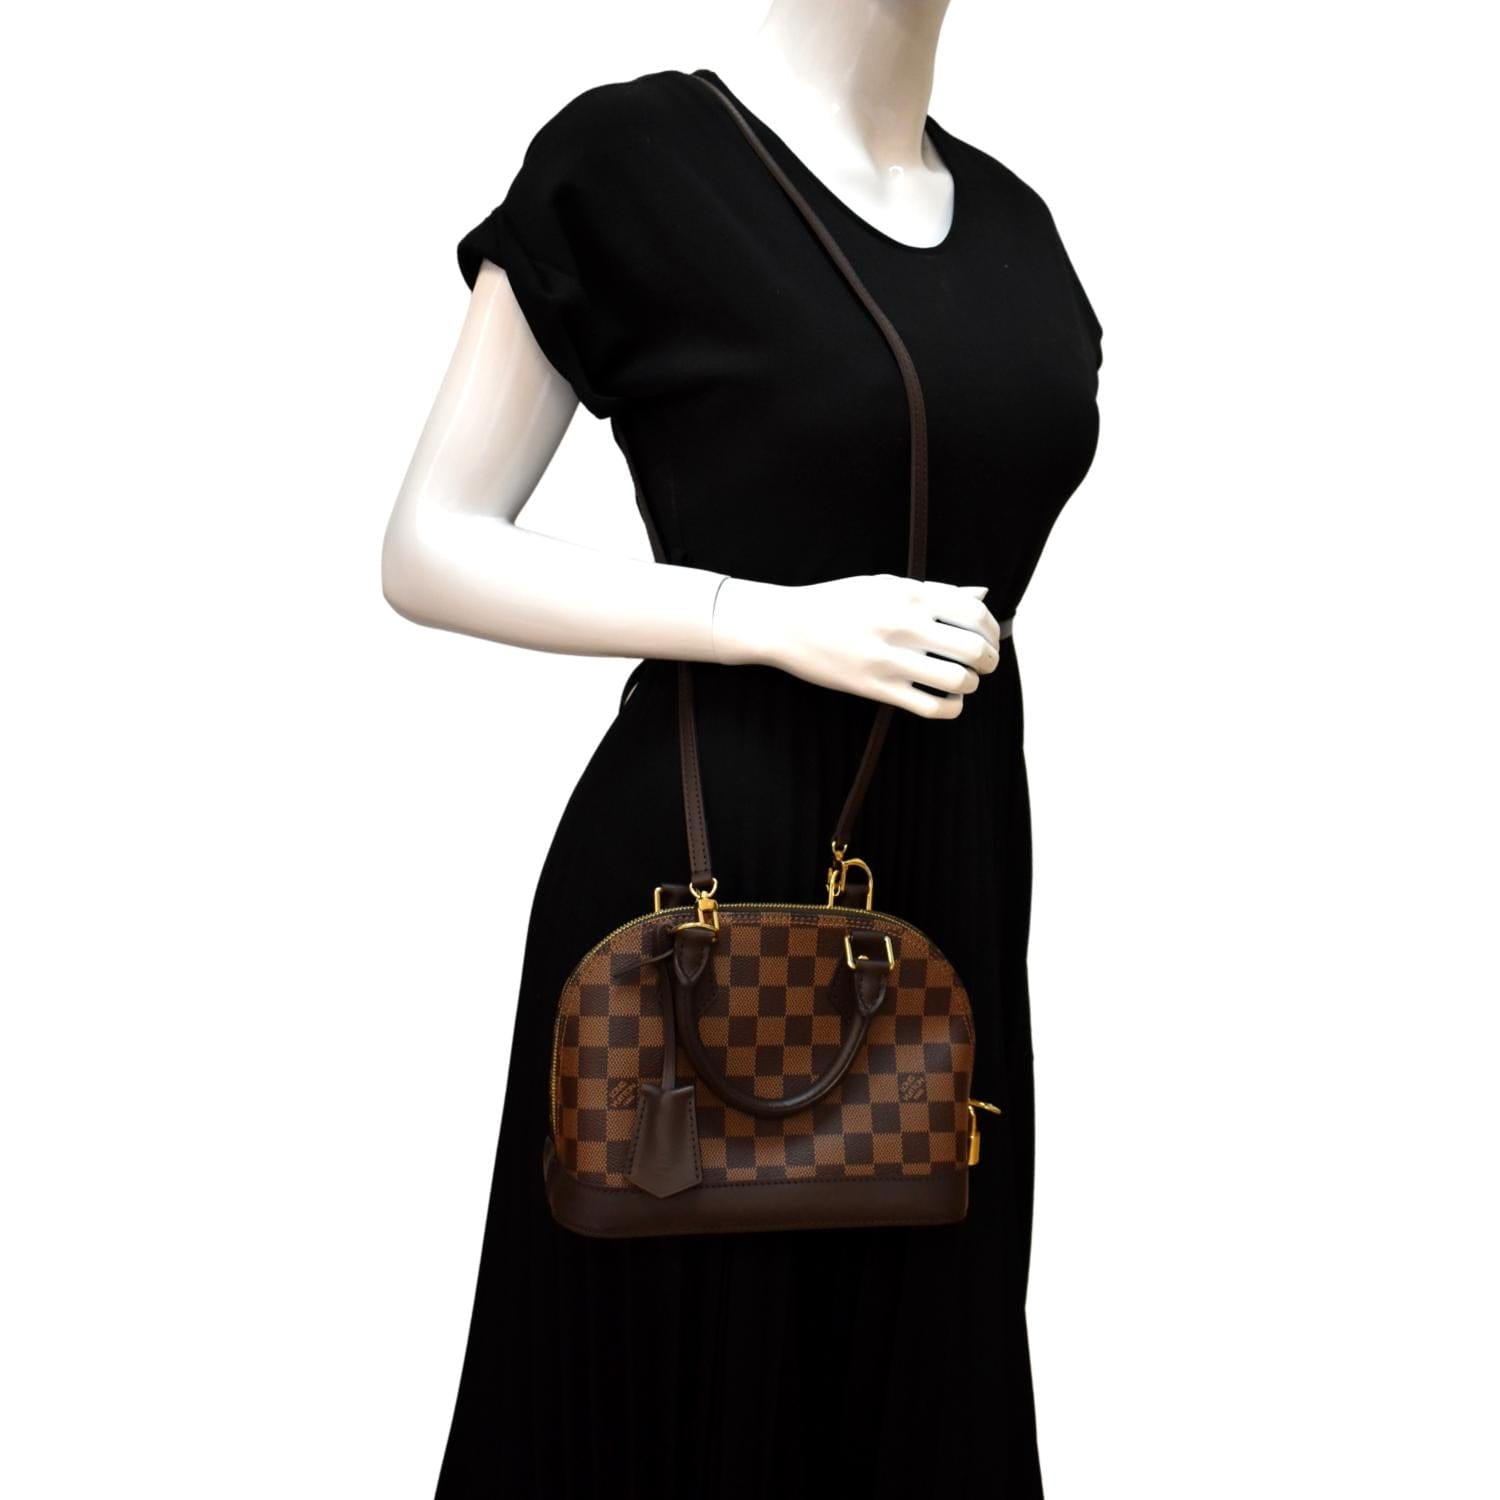 Louis Vuitton Alma Bb Handbag